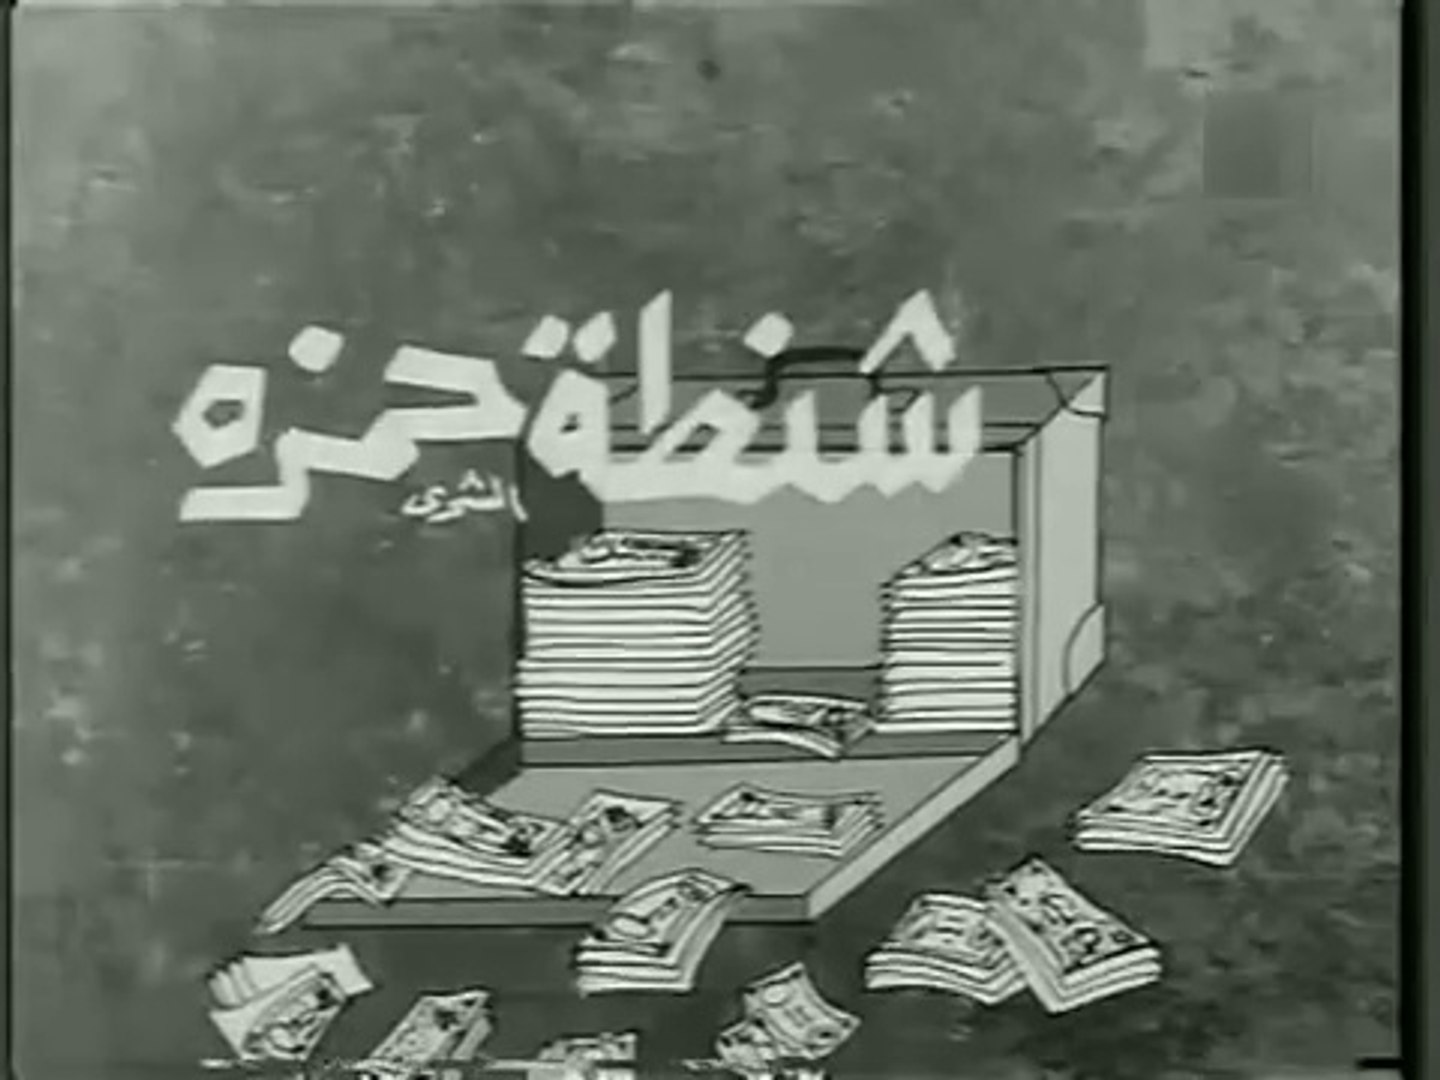 فيلم شنطة حمزة بطولة امين الهنيدي و نجوى فؤاد 1967 - video Dailymotion